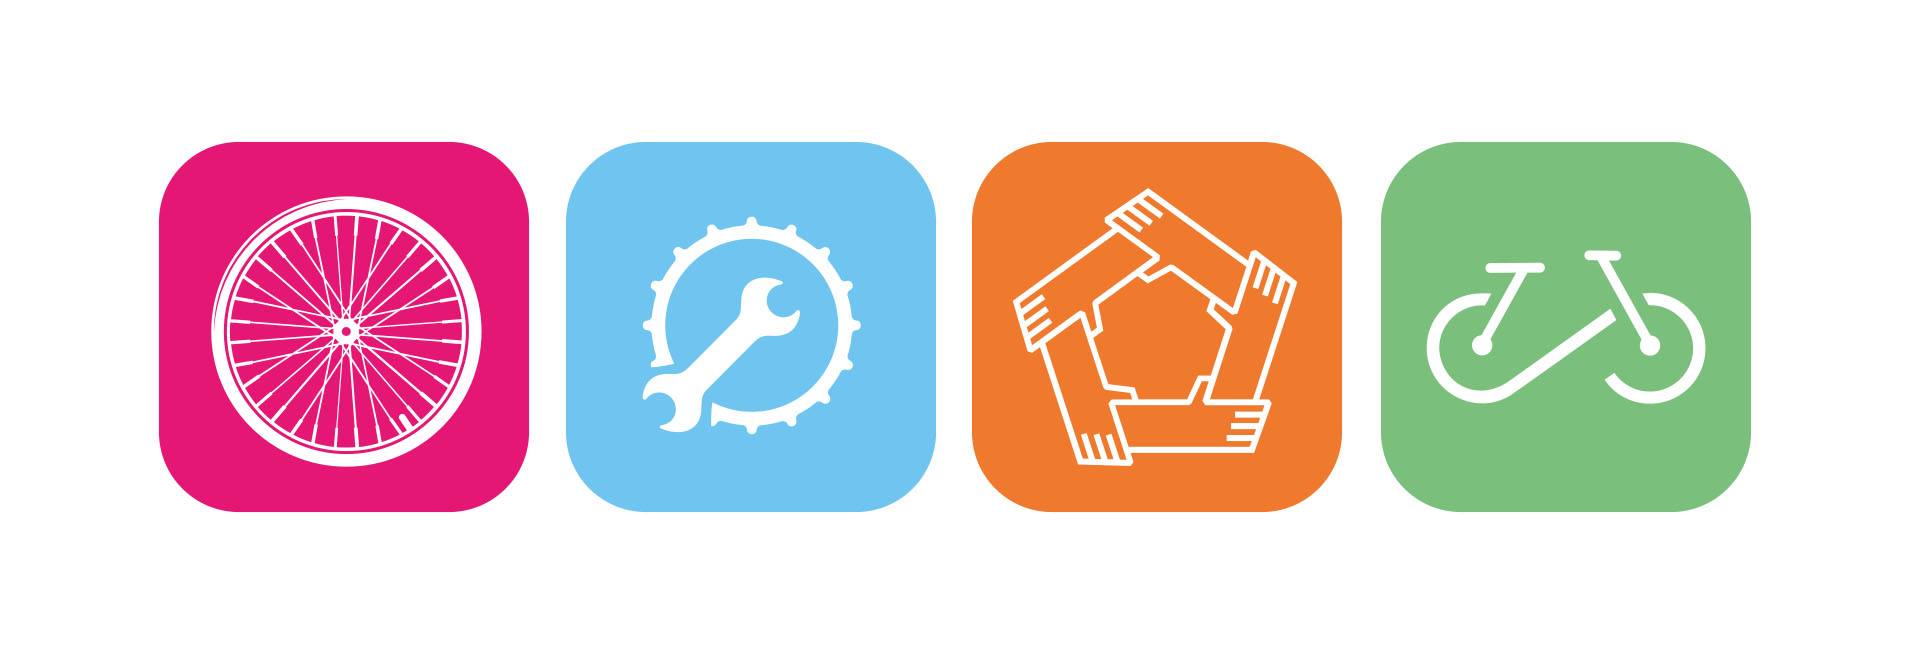 Vier Icons sind in horizontaler Linie zu sehen. Die Icons stehen für die vier Geschäftsbereiche "Verkauf", "Werkstatt", "Soziale Integration" und "UpCycling / Gebrauchträder". Jedes Icon hat eine andere Hintergrundfarbe, nämlich Pink, Blau, Orange und Grün.